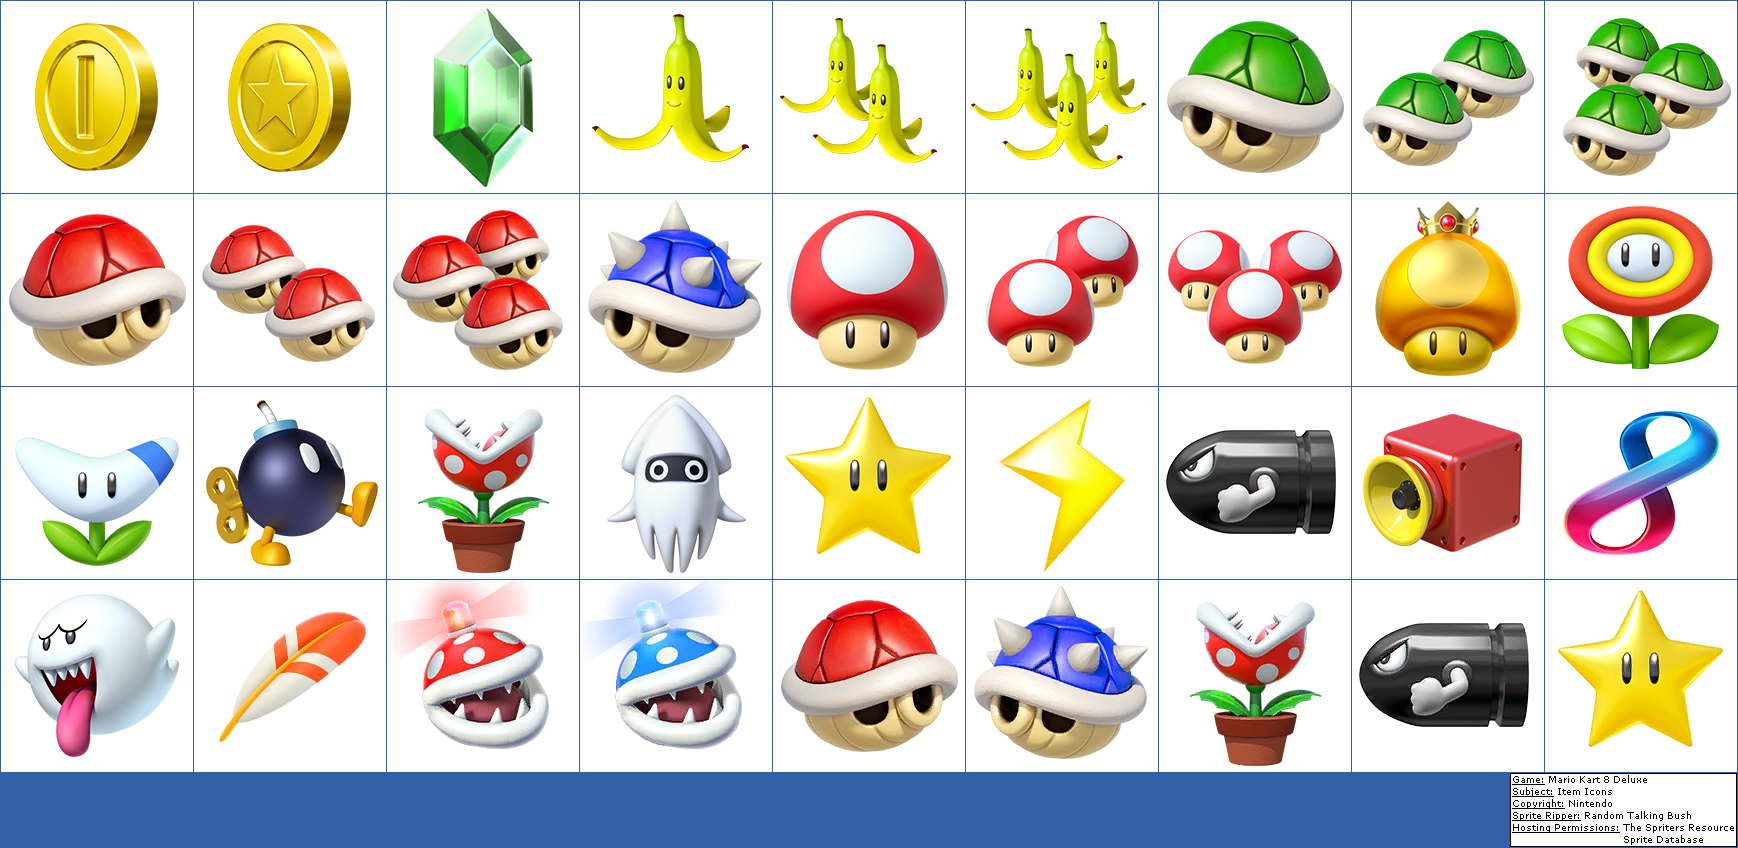 Randome Clipart Mario Kart - Mario Kart 8 Deluxe Items (1738x848), Png Download